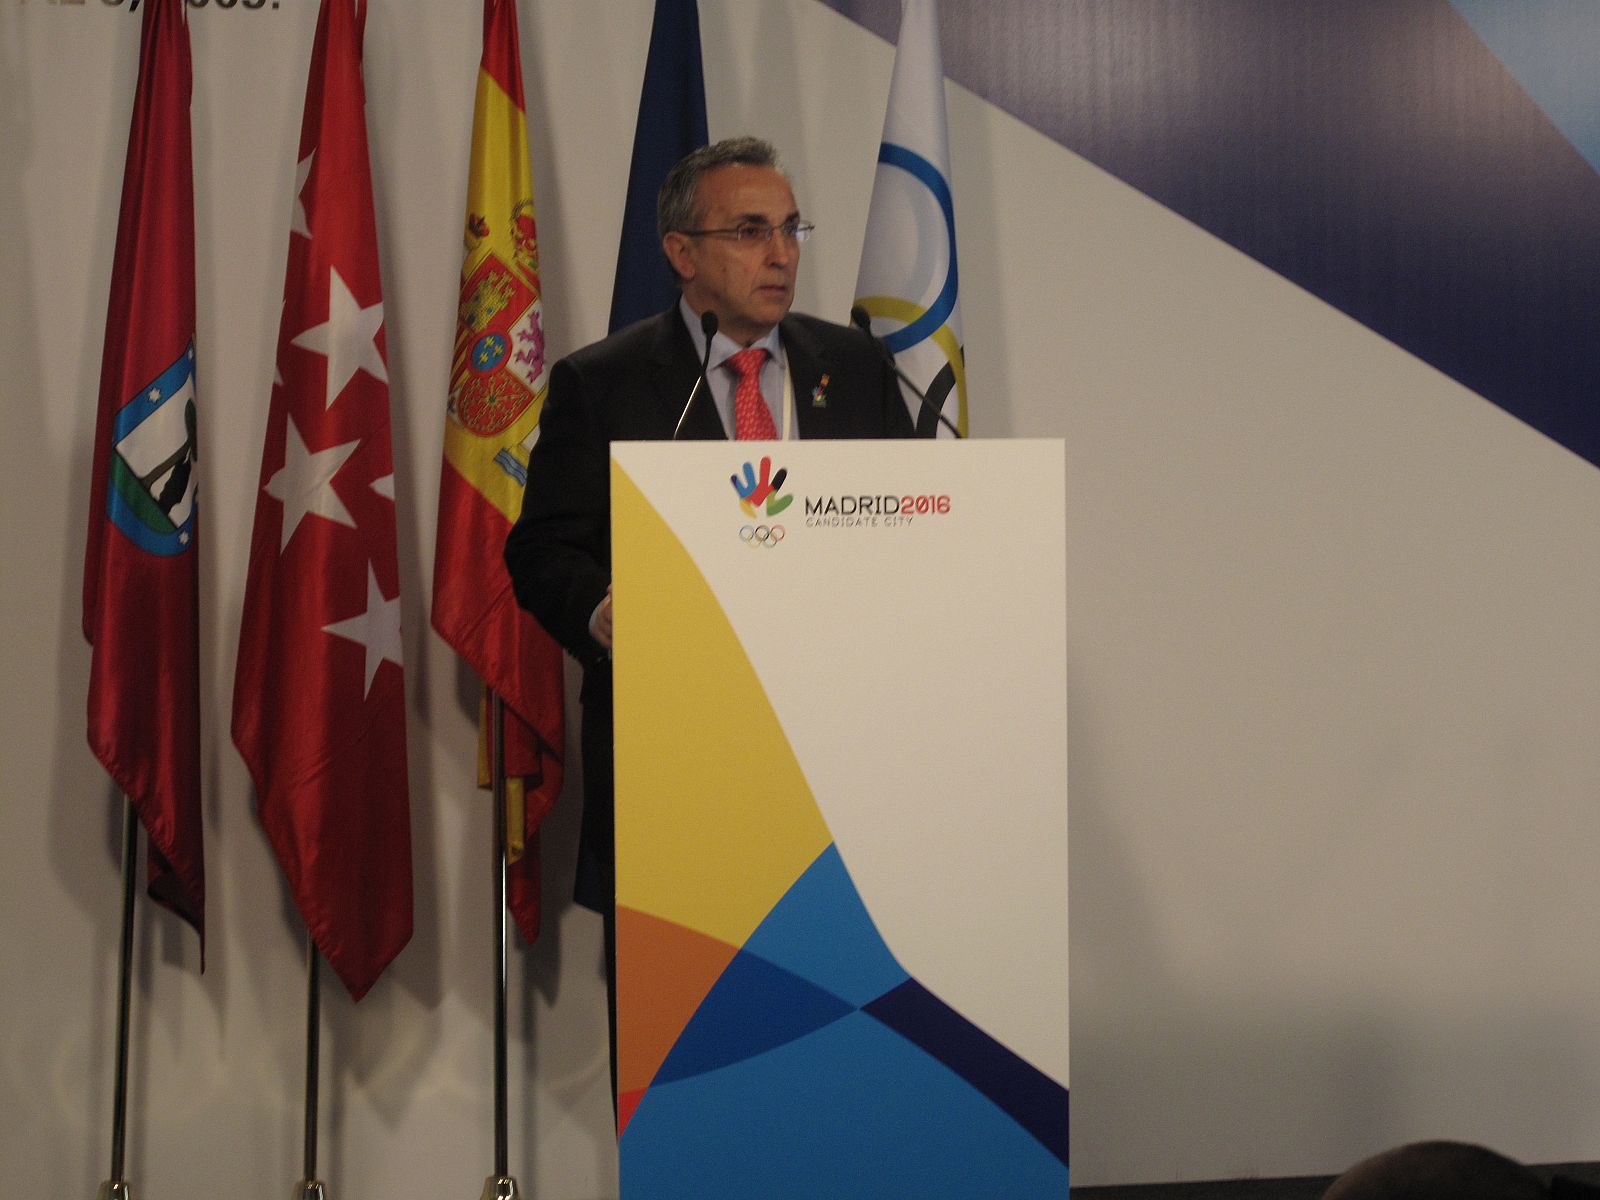 El presidente del COE, Alejandro Blanco, hizo un balance muy positivo de las primeras ponencias.